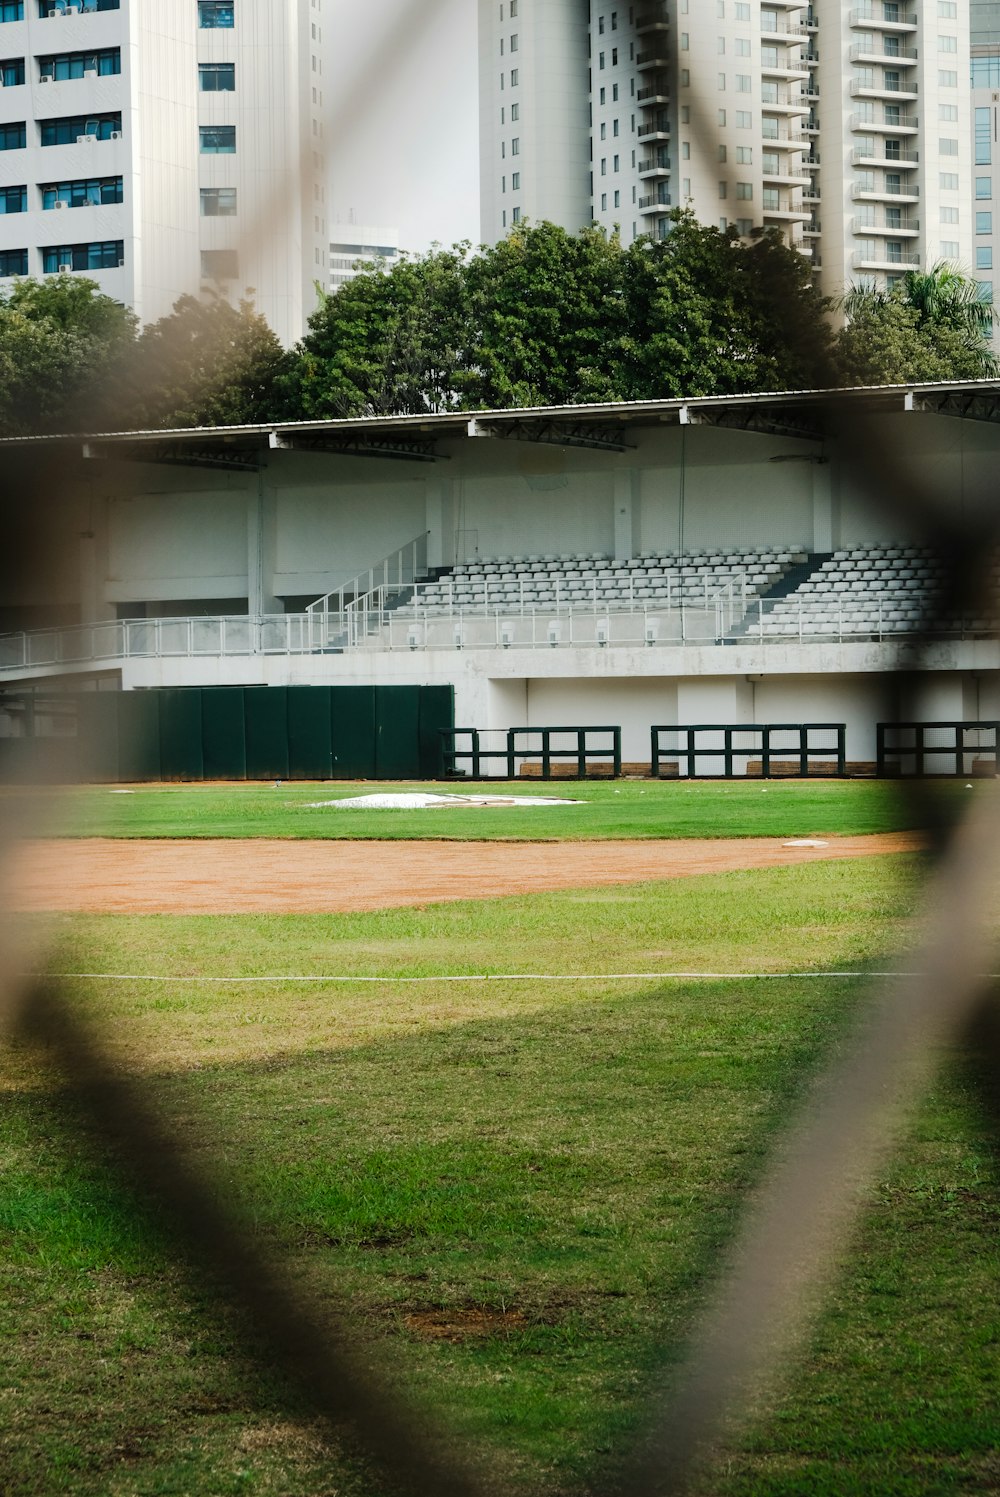 un campo de béisbol a través de una valla con edificios al fondo